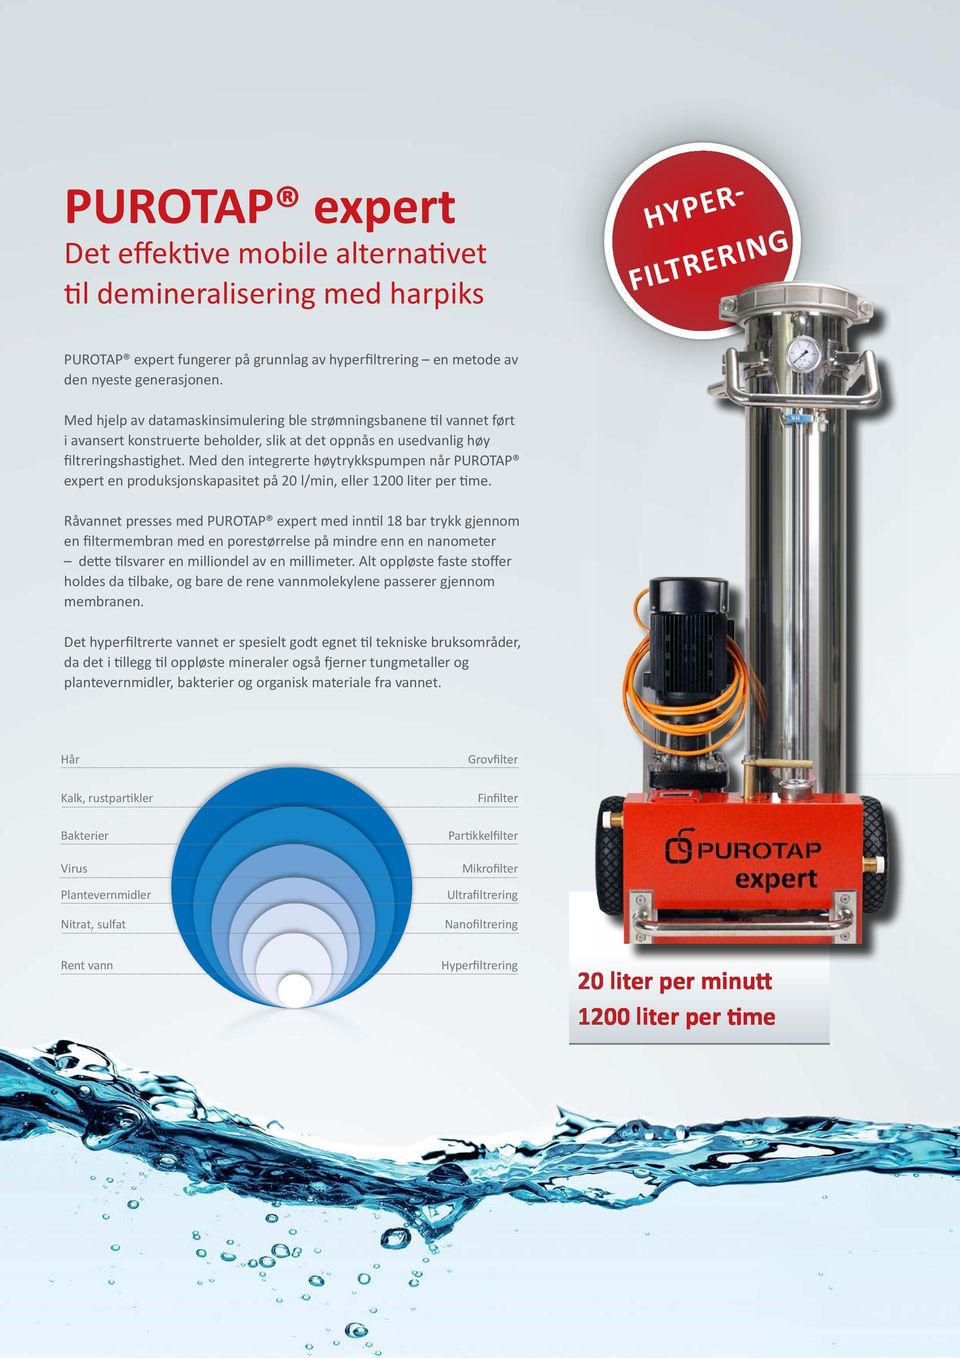 Med den integrerte høytrykkspumpen når PUROTAP expert en produksjonskapasitet på 20 l/min, eller 1200 liter per time.